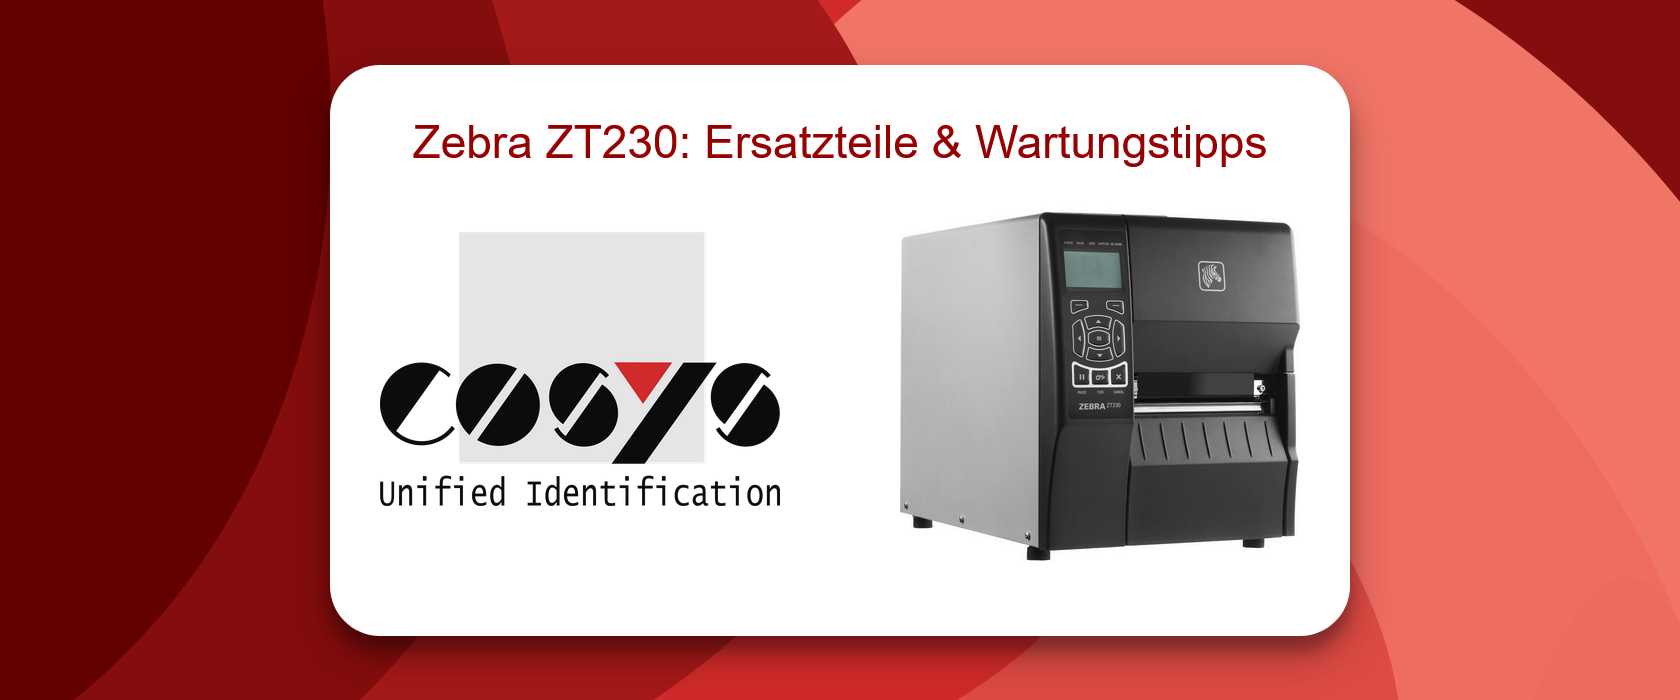 Zebra ZT230 Support